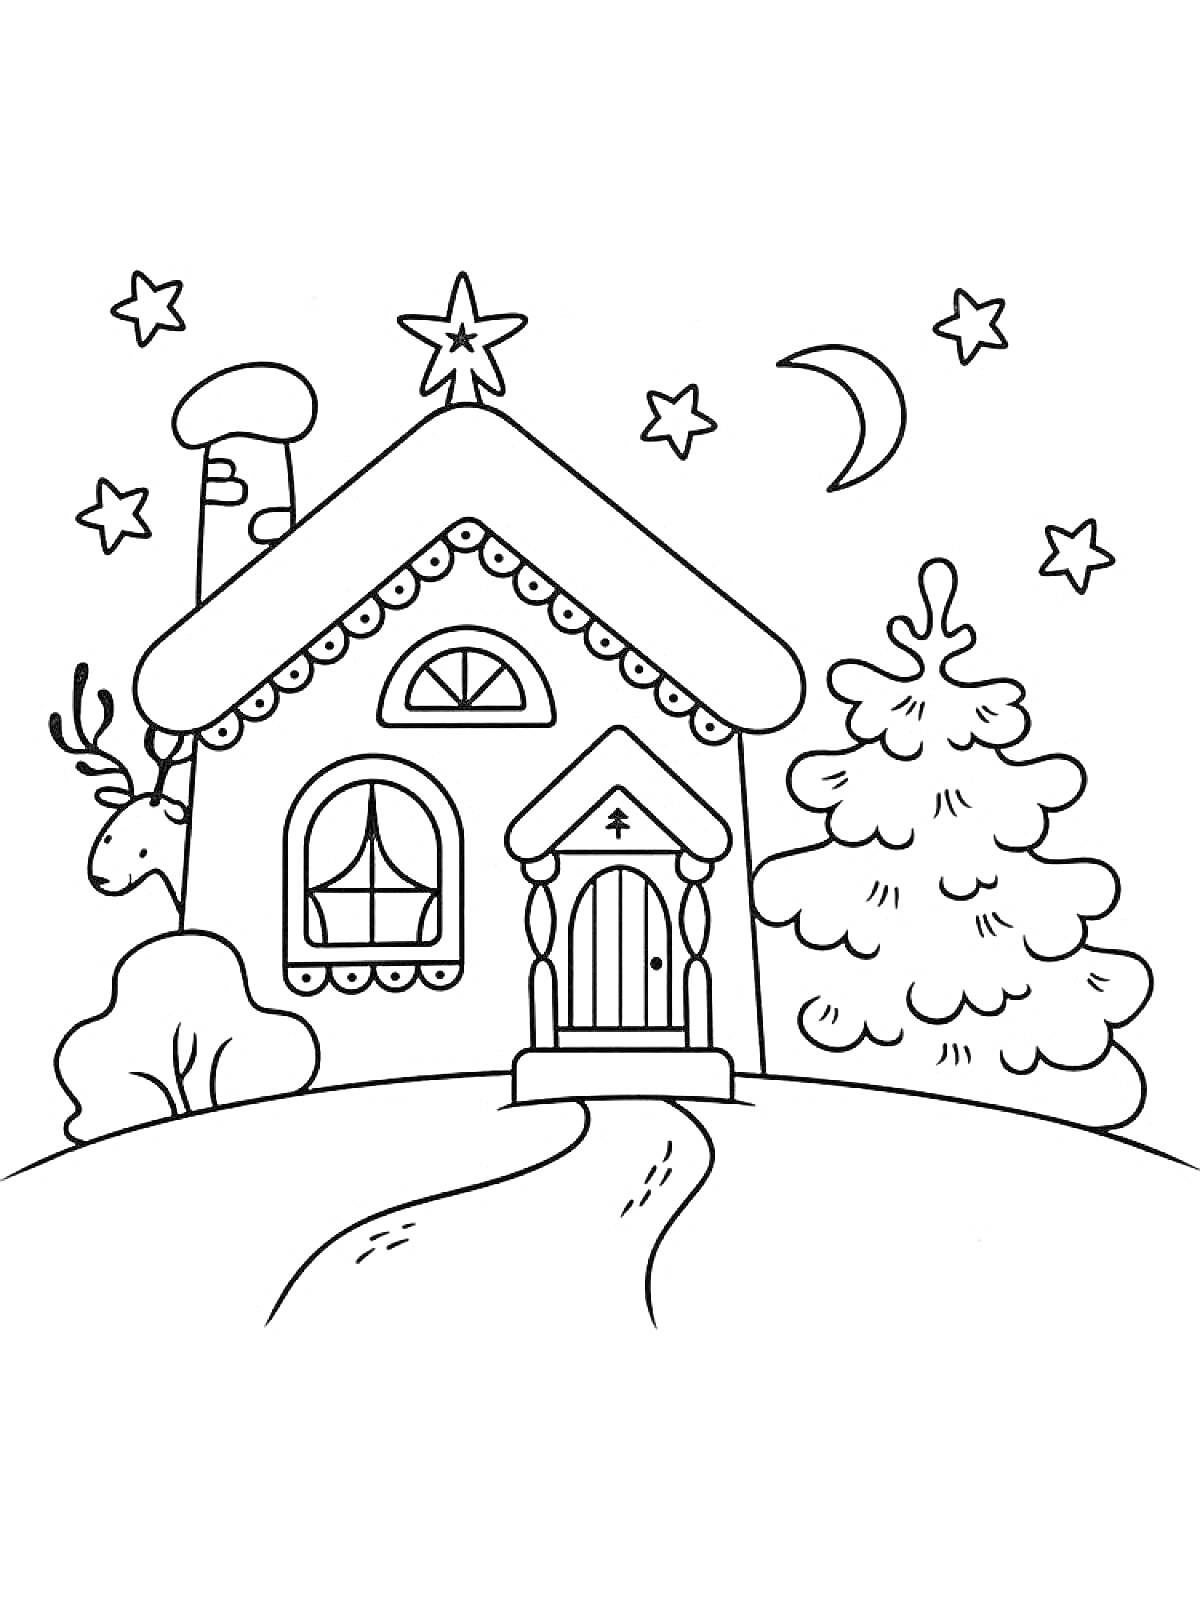 Раскраска Домик с трубой, рождественской ёлкой, звездным небом и оленем